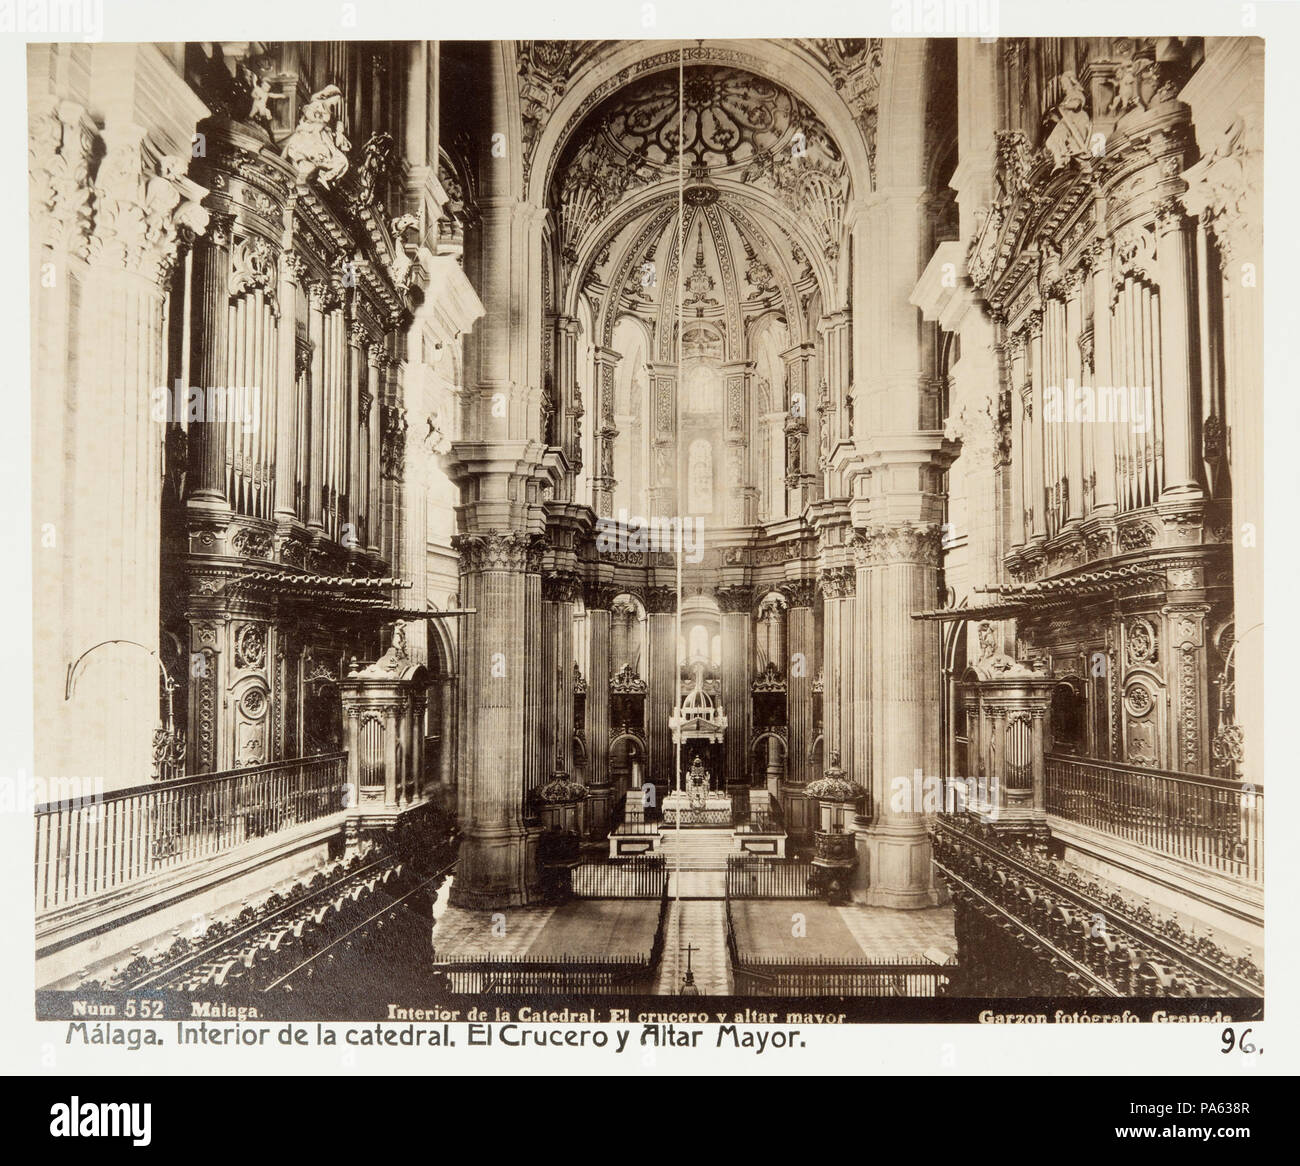 Inv.nr: LXVI:J.96. 87 Fotografi av Málaga. Interior de la Catedral, El crucero y altar mayor - Hallwylska museet - 104935 Stock Photo